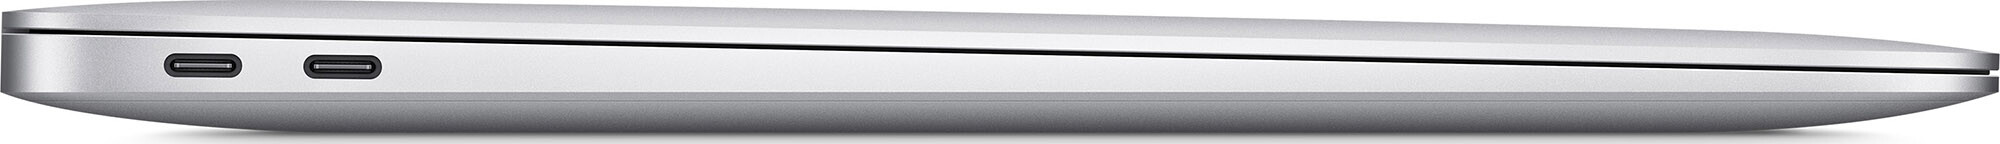 MacBook Air 13  Silver 512Gb 2020 (MVH42) 